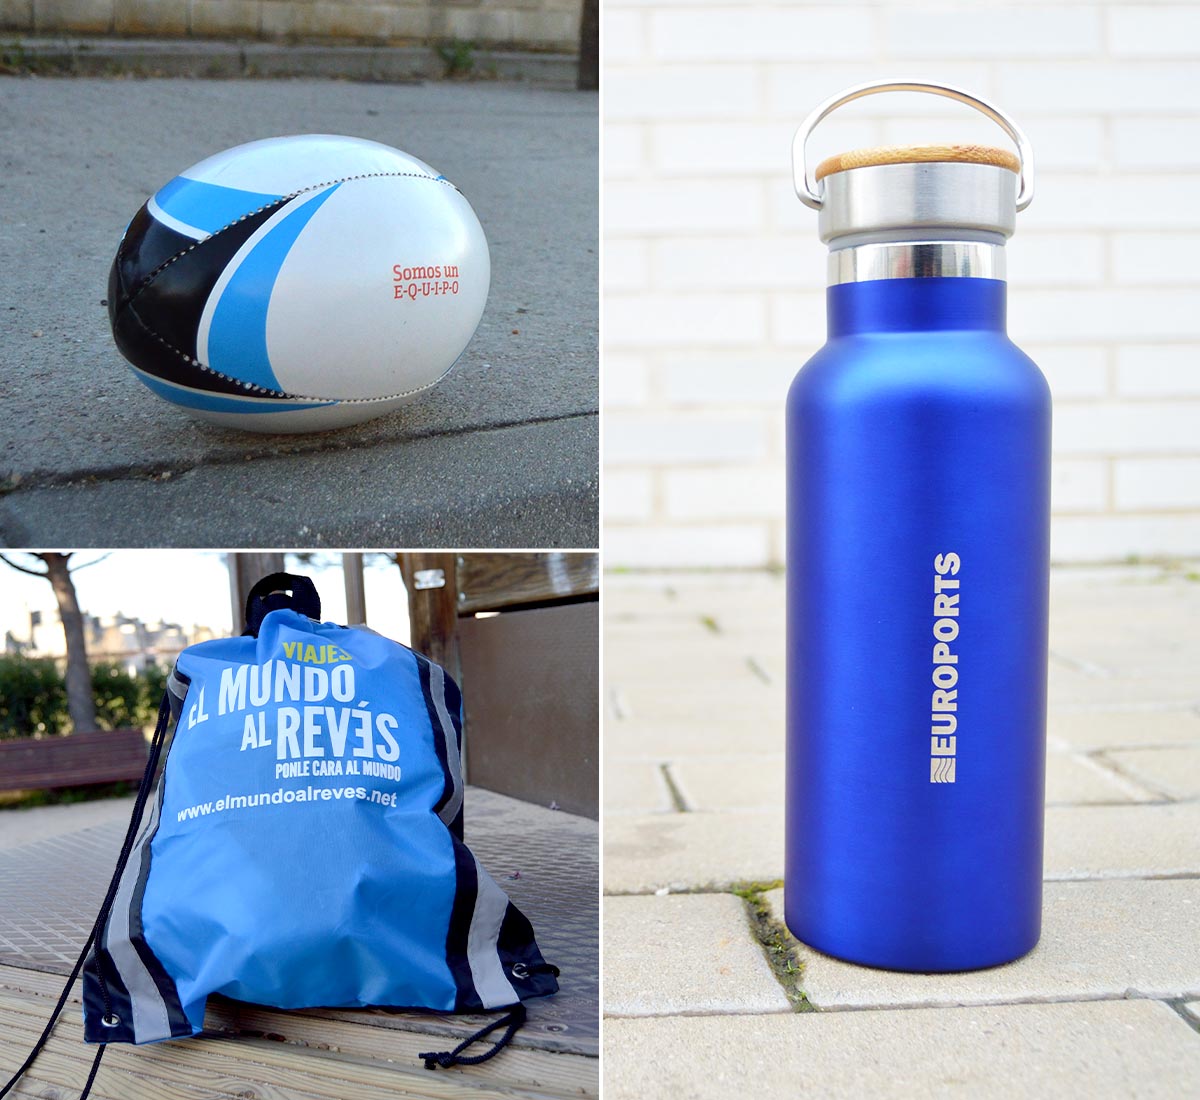 Productos para campañas de merchandising relacionadas con deporte, como balón de rugby, mochila de cuerdas y botella o bidón